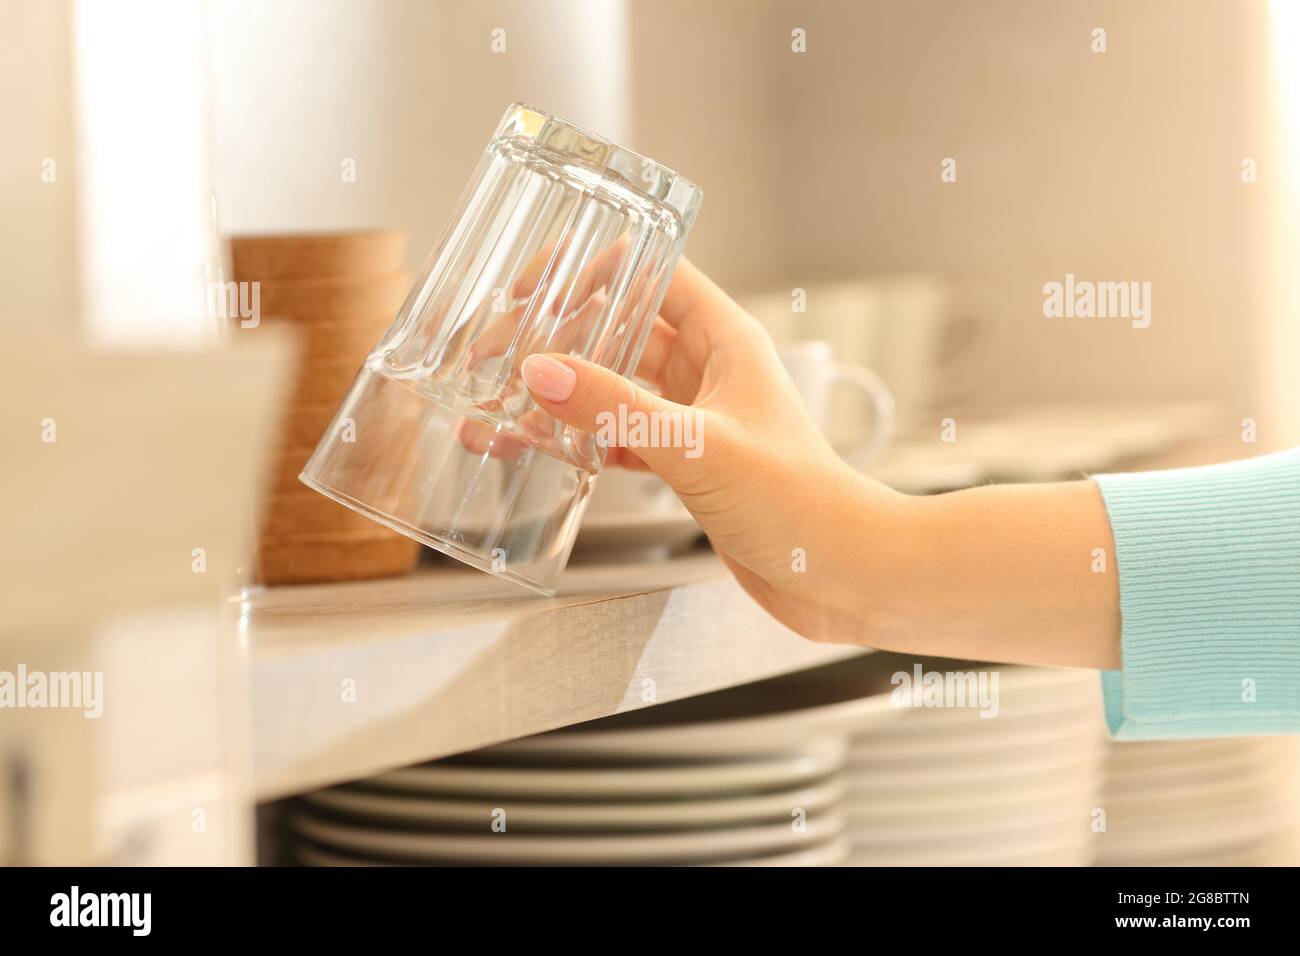 Cerca de una mujer cogiendo un vaso en la cocina Foto de stock